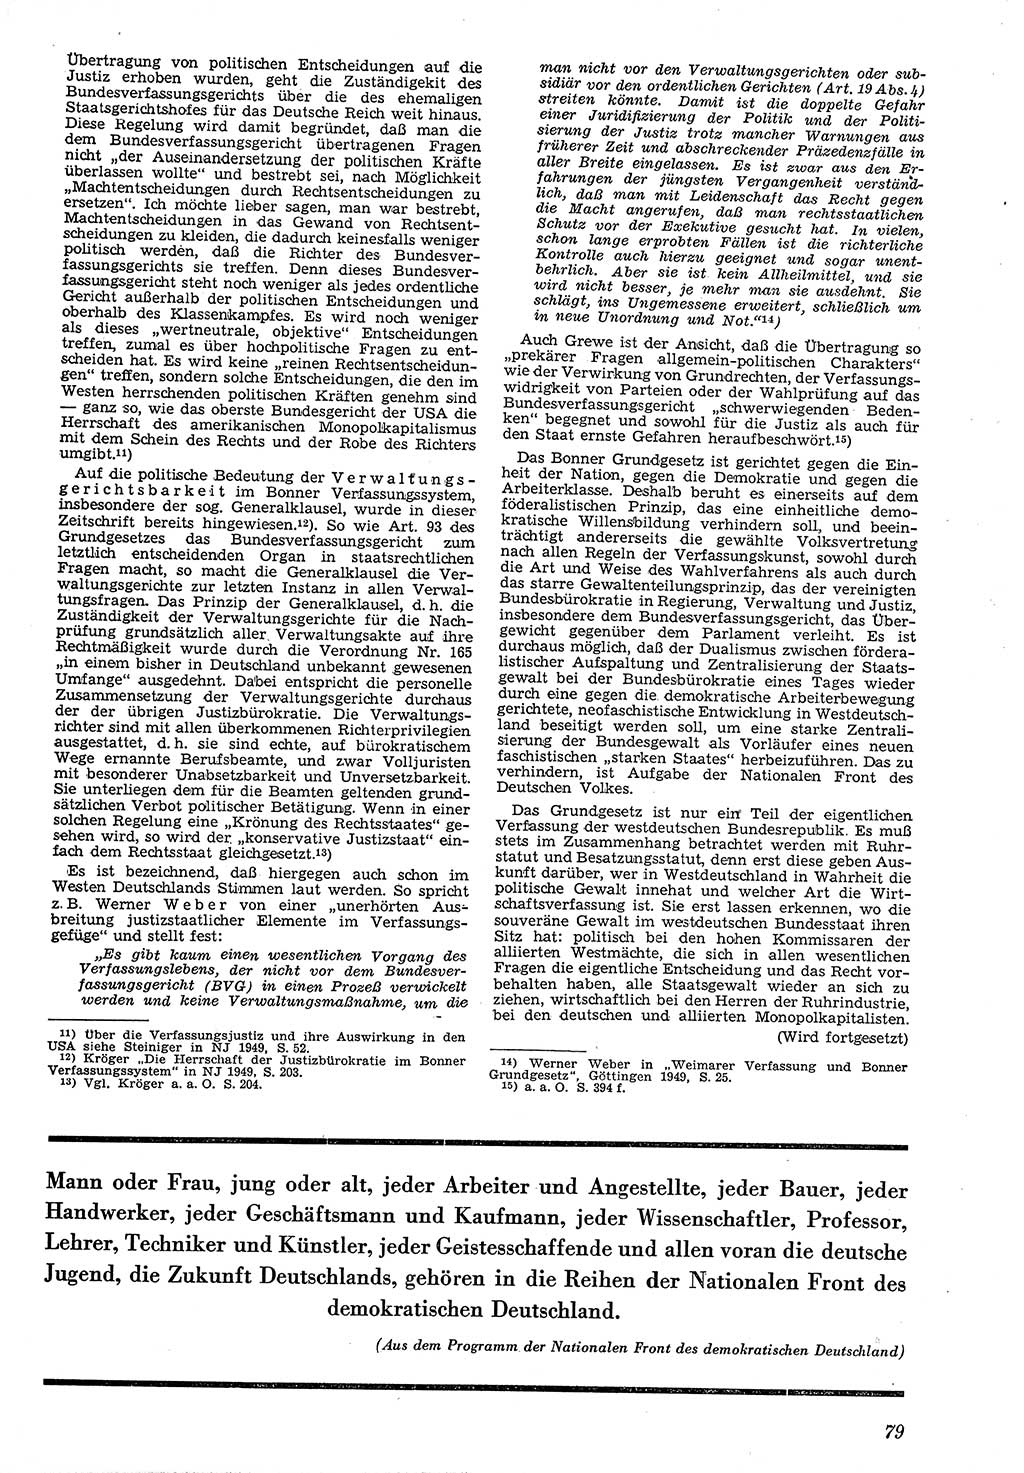 Neue Justiz (NJ), Zeitschrift für Recht und Rechtswissenschaft [Deutsche Demokratische Republik (DDR)], 4. Jahrgang 1950, Seite 79 (NJ DDR 1950, S. 79)